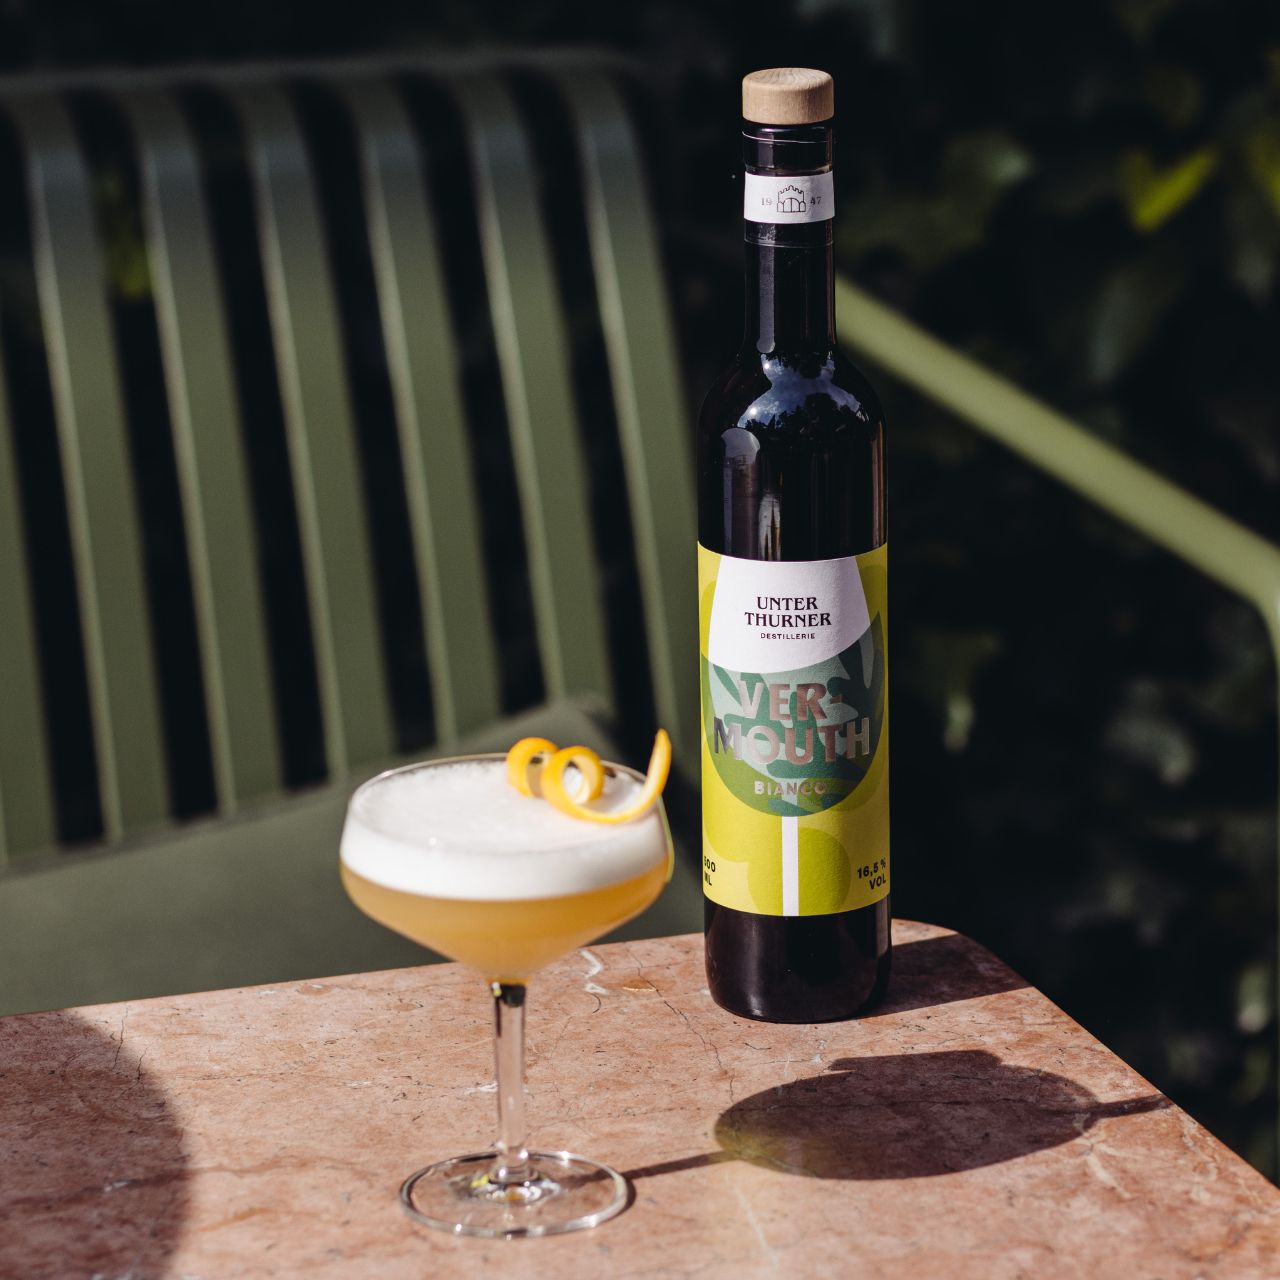 Der neue Unterthurner Vermouth Bianco besticht durch seine sorgfältige Herstellung und exquisiten Zutaten. 